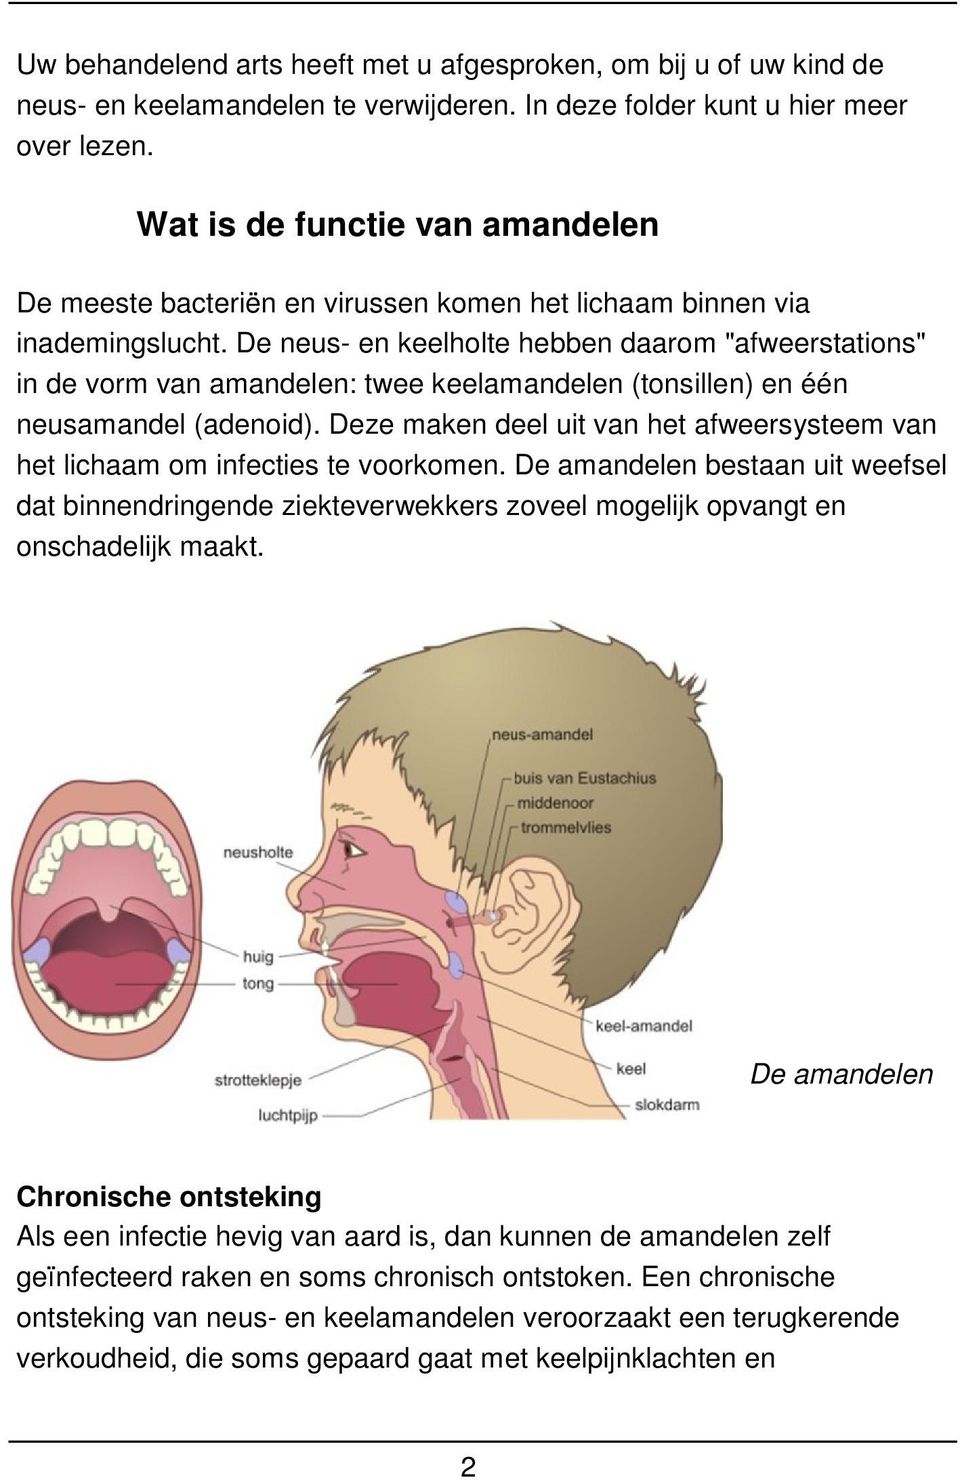 De neus- en keelholte hebben daarom "afweerstations" in de vorm van amandelen: twee keelamandelen (tonsillen) en één neusamandel (adenoid).